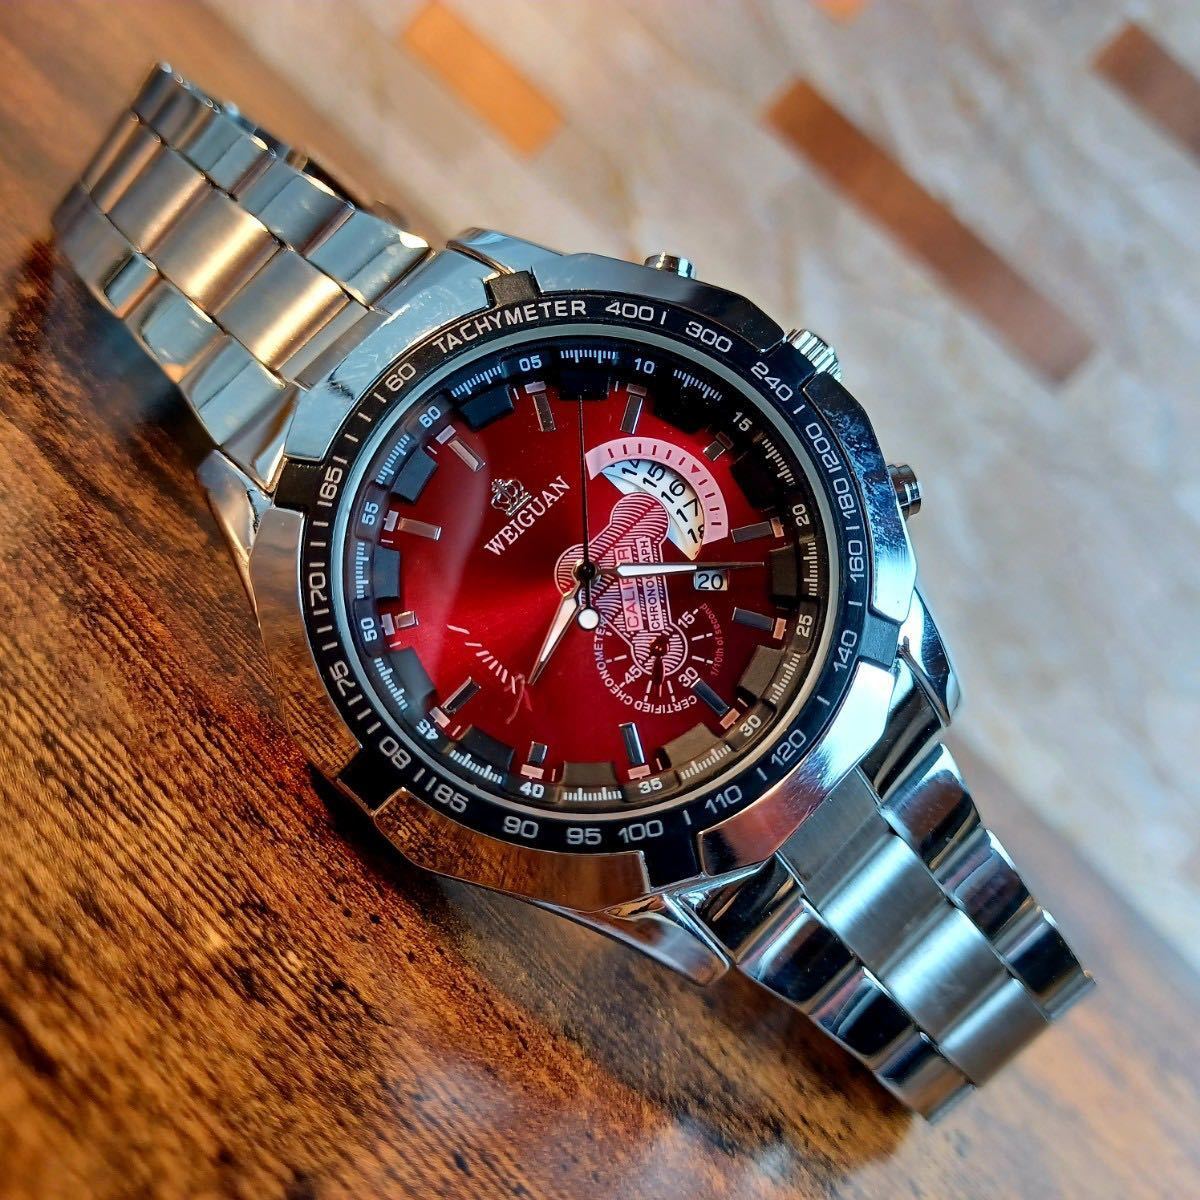 新品 クロノグラフ WEIGUAN デユアル ラグジュアリーステンレス 腕時計メンズ 赤 【あすつく】 デユアル